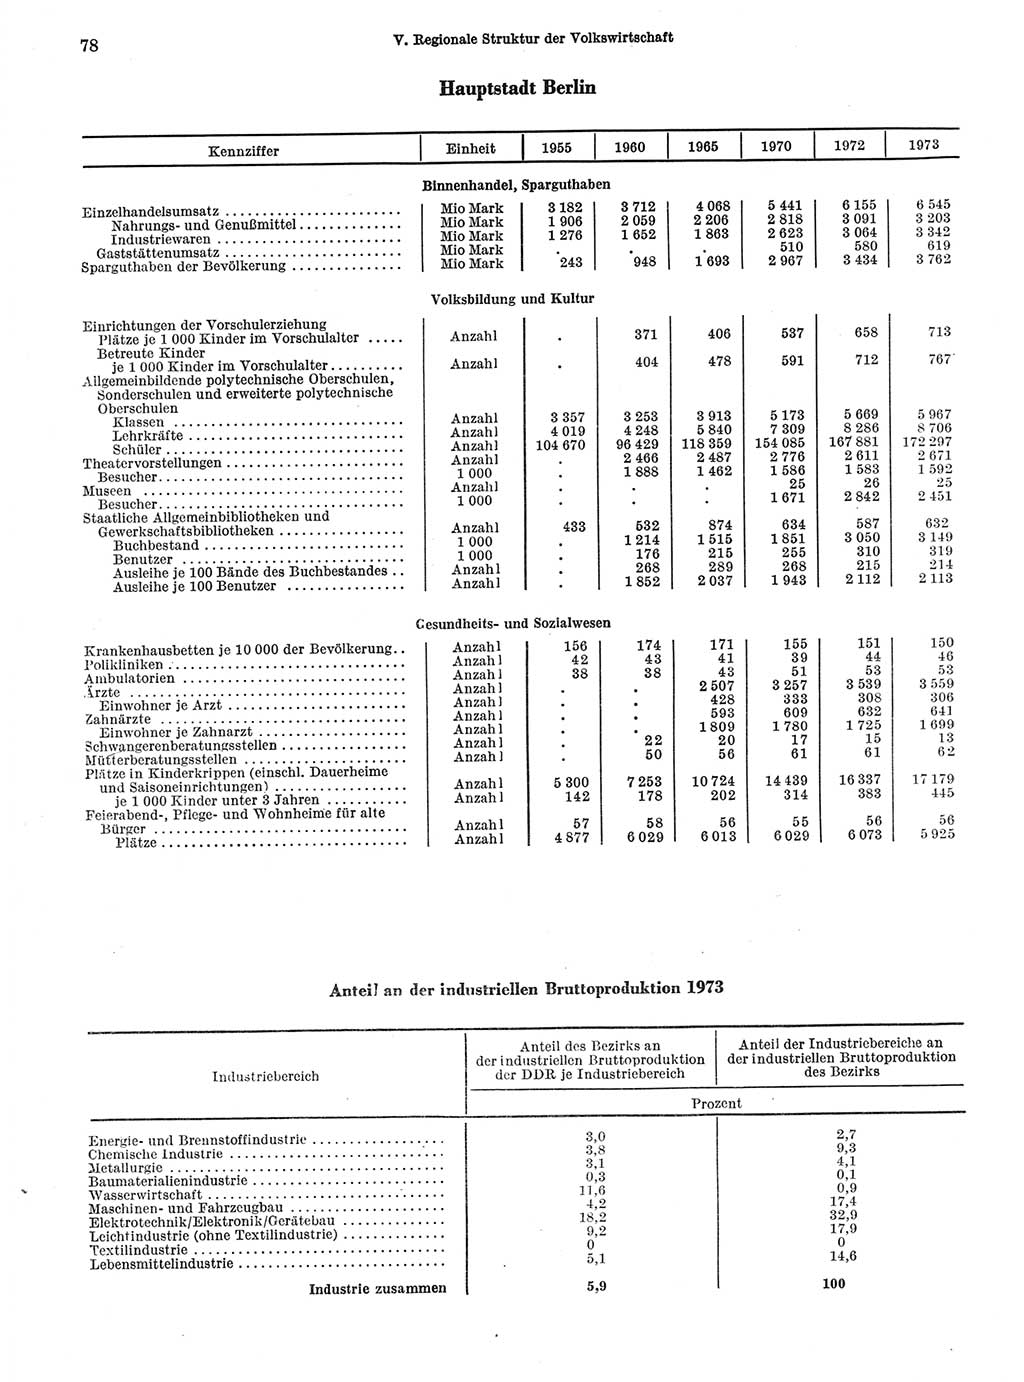 Statistisches Jahrbuch der Deutschen Demokratischen Republik (DDR) 1974, Seite 78 (Stat. Jb. DDR 1974, S. 78)